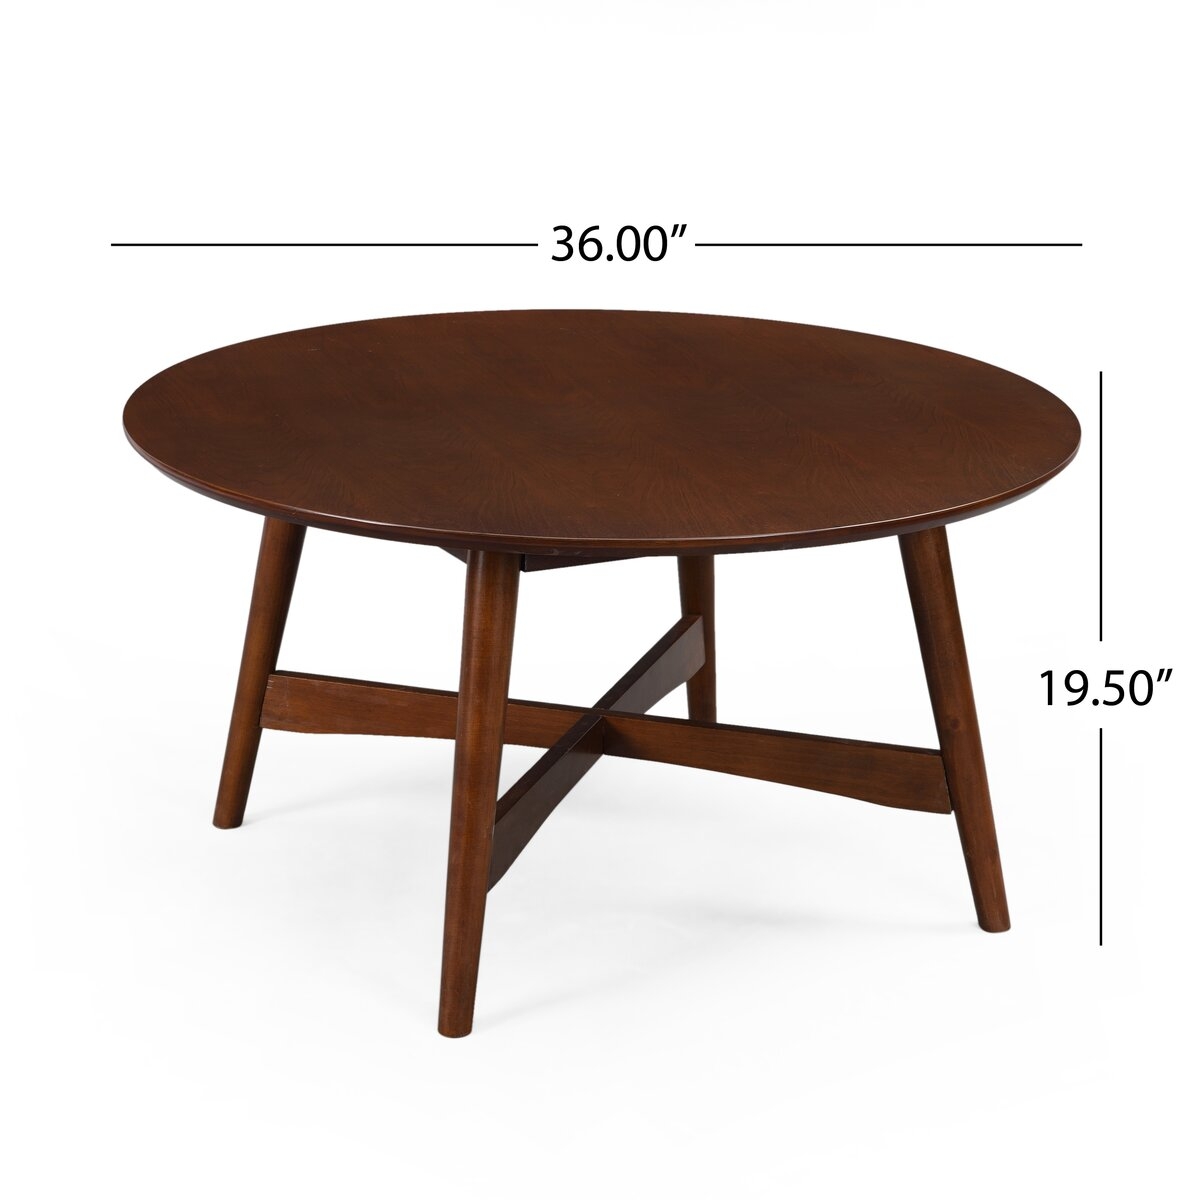 George Oliver 4 Legs Coffee Table / Walnut - Image 2